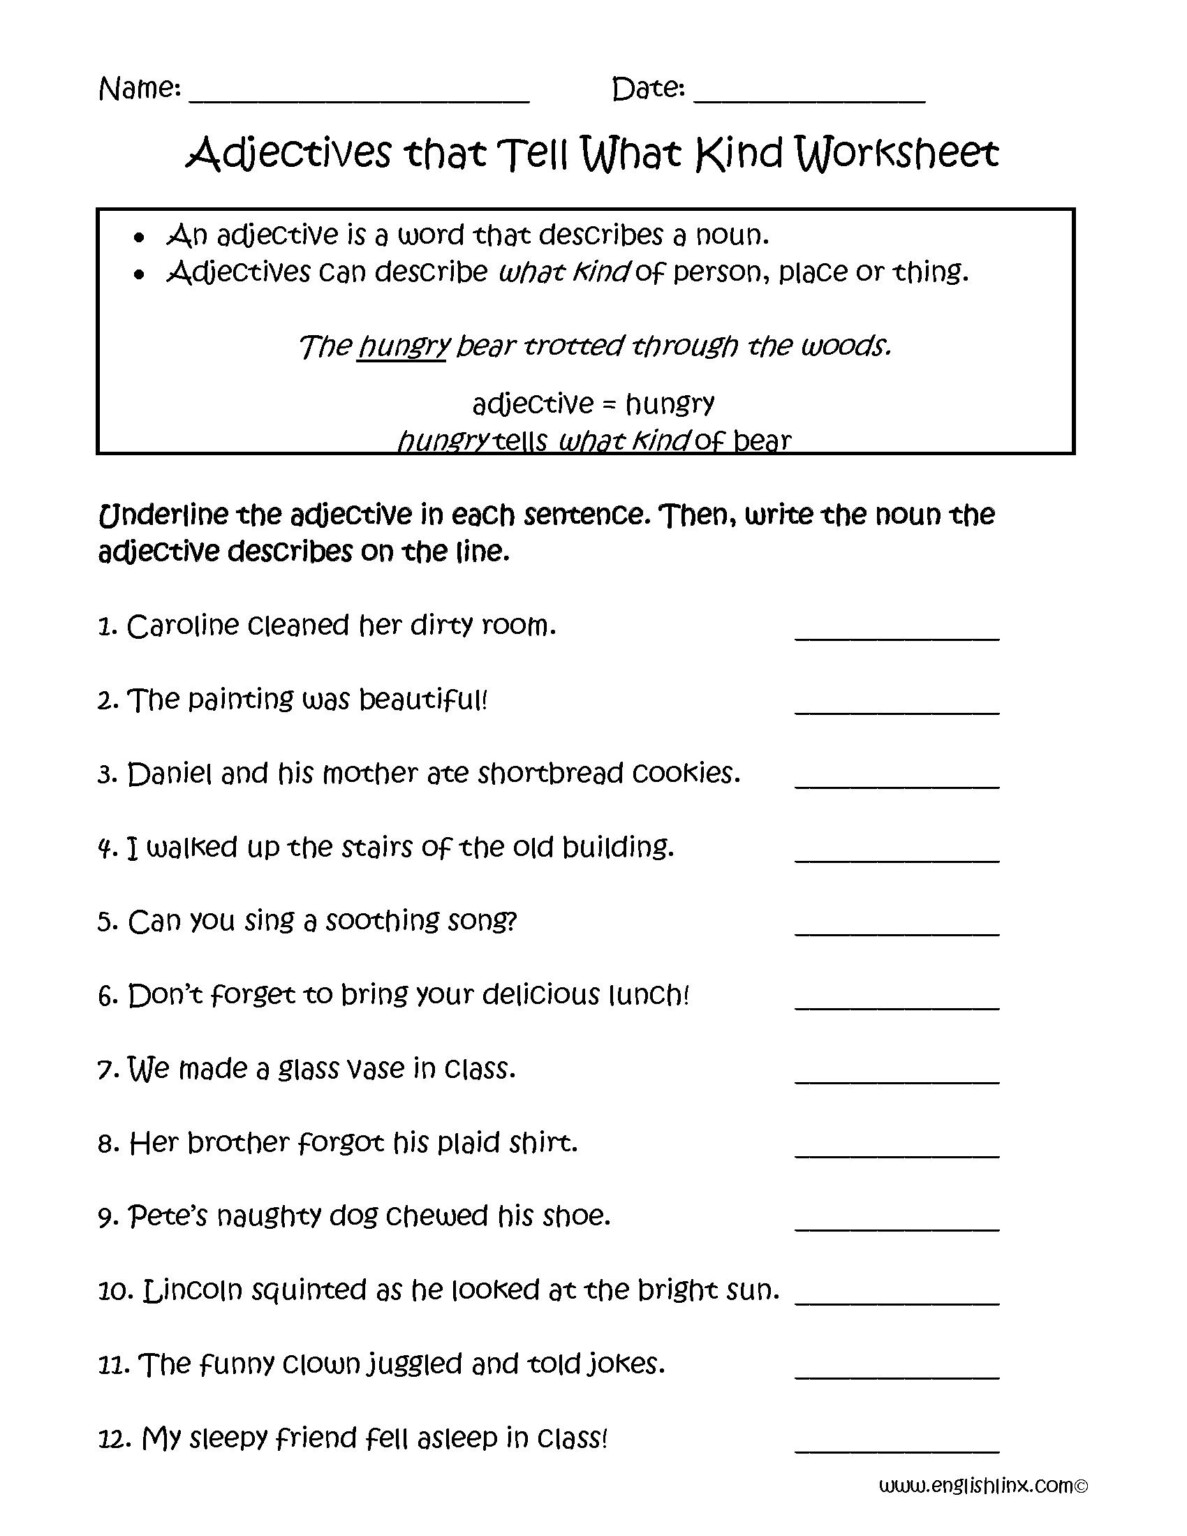 adjective-phrases-worksheet-ks2-adjectiveworksheets